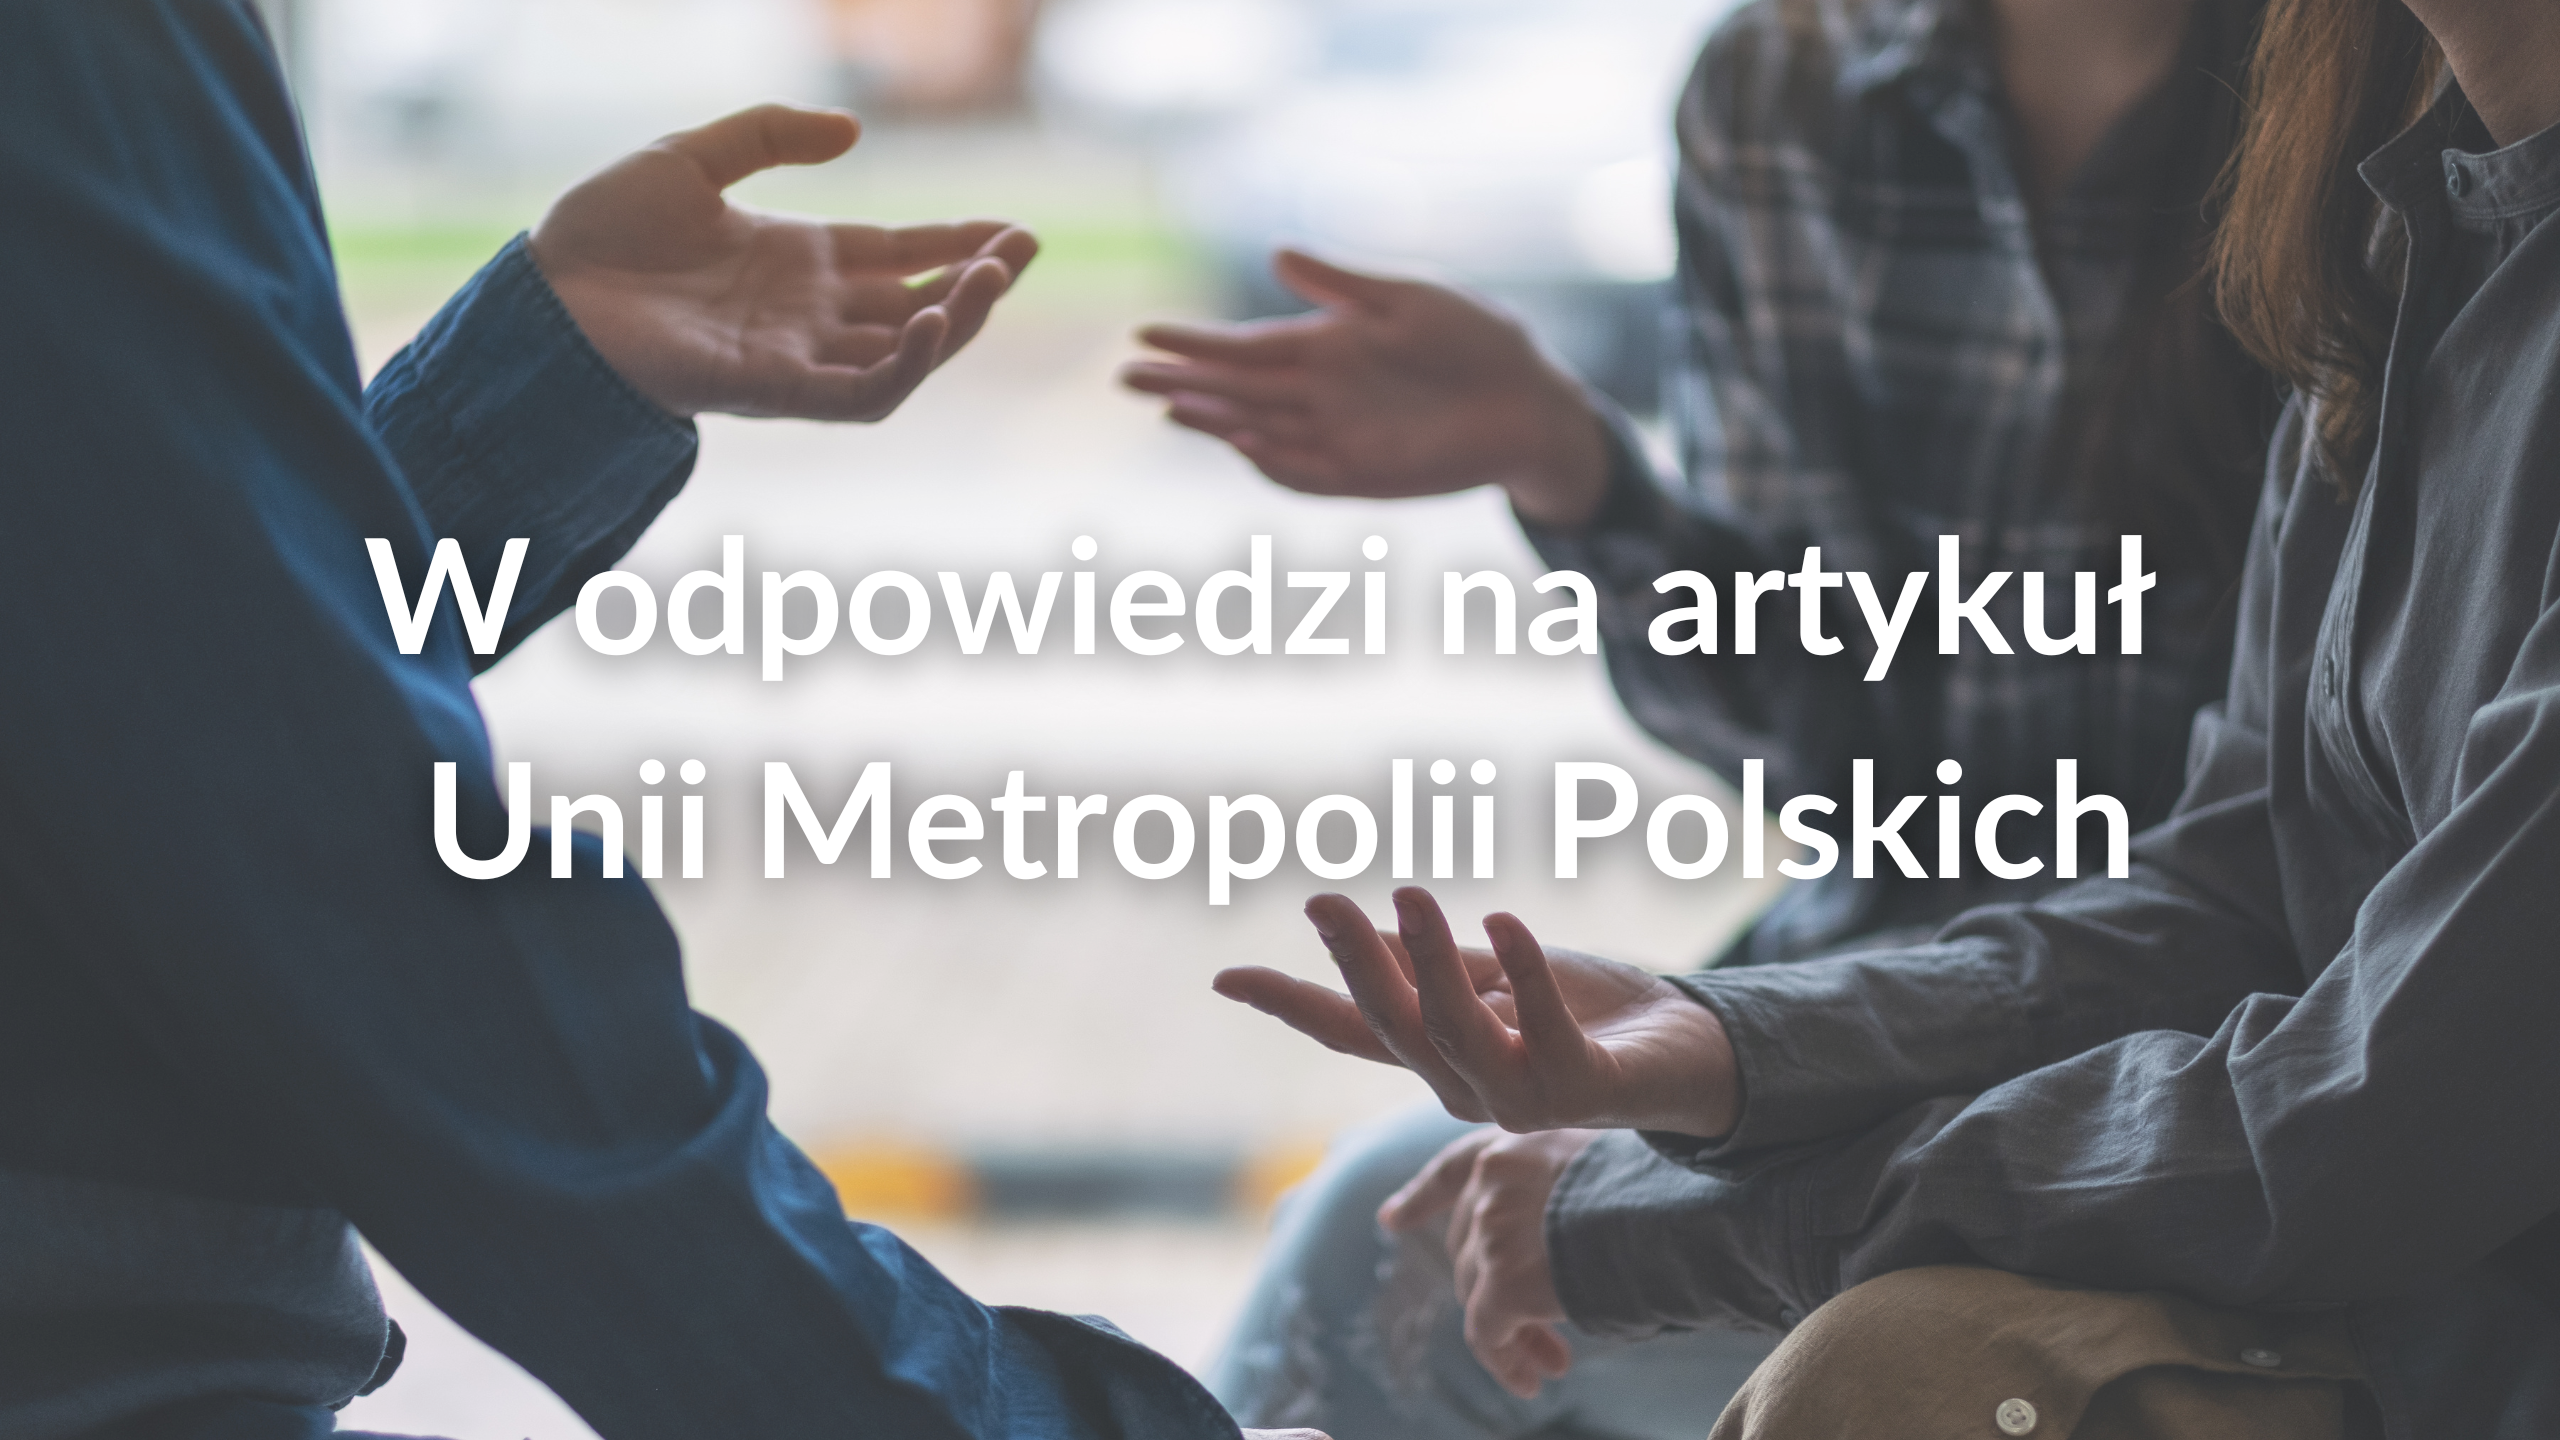 W odpowiedzi na artykuł Unii Metropolii Polskich